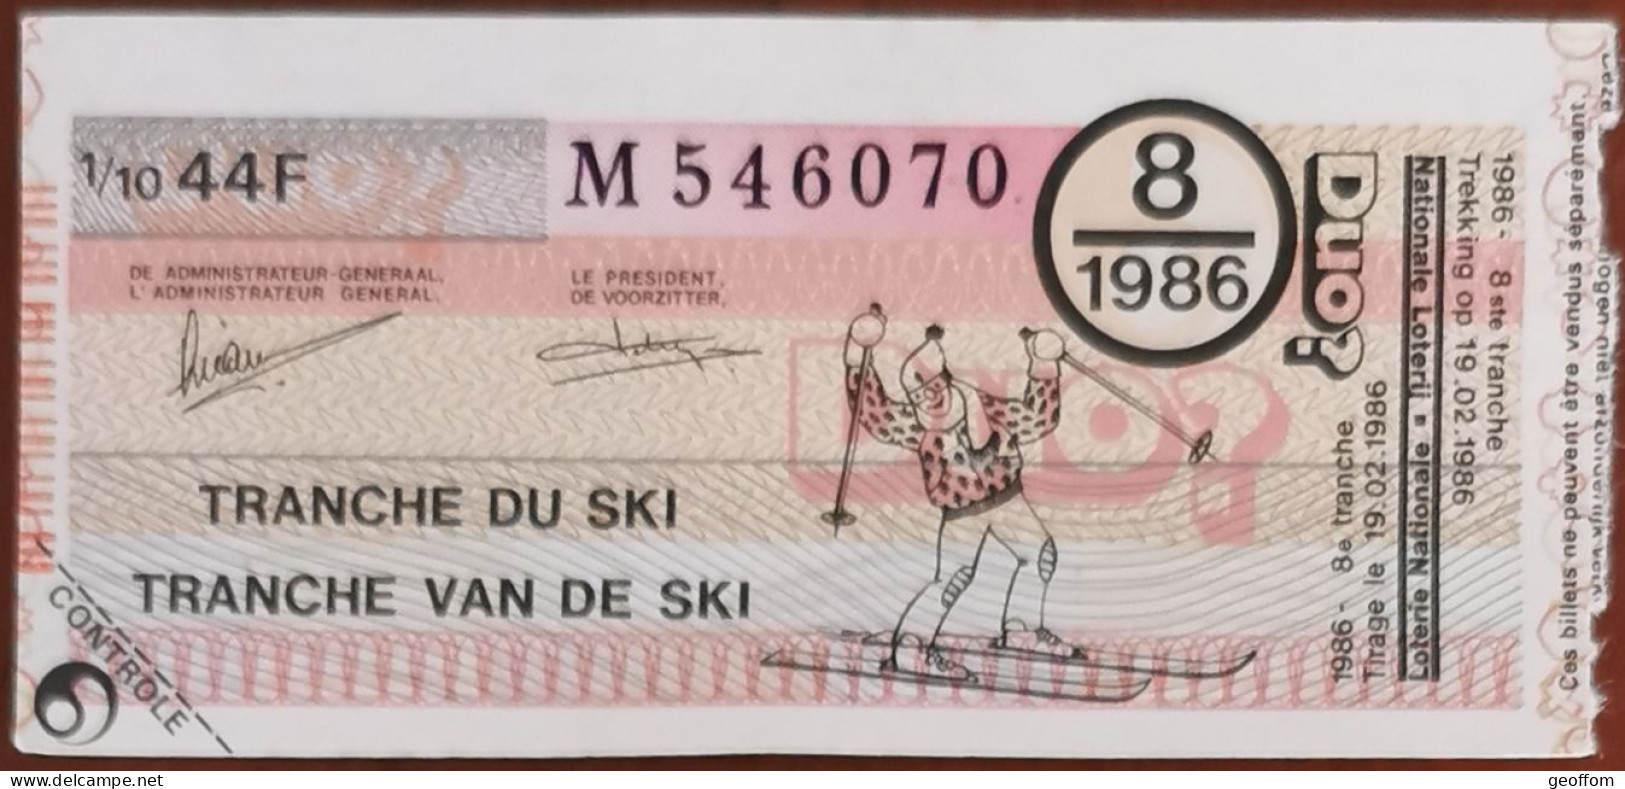 Billet De Loterie Nationale Belgique 1986 8e Tranche Du Ski - 19-2-1986 - Billetes De Lotería